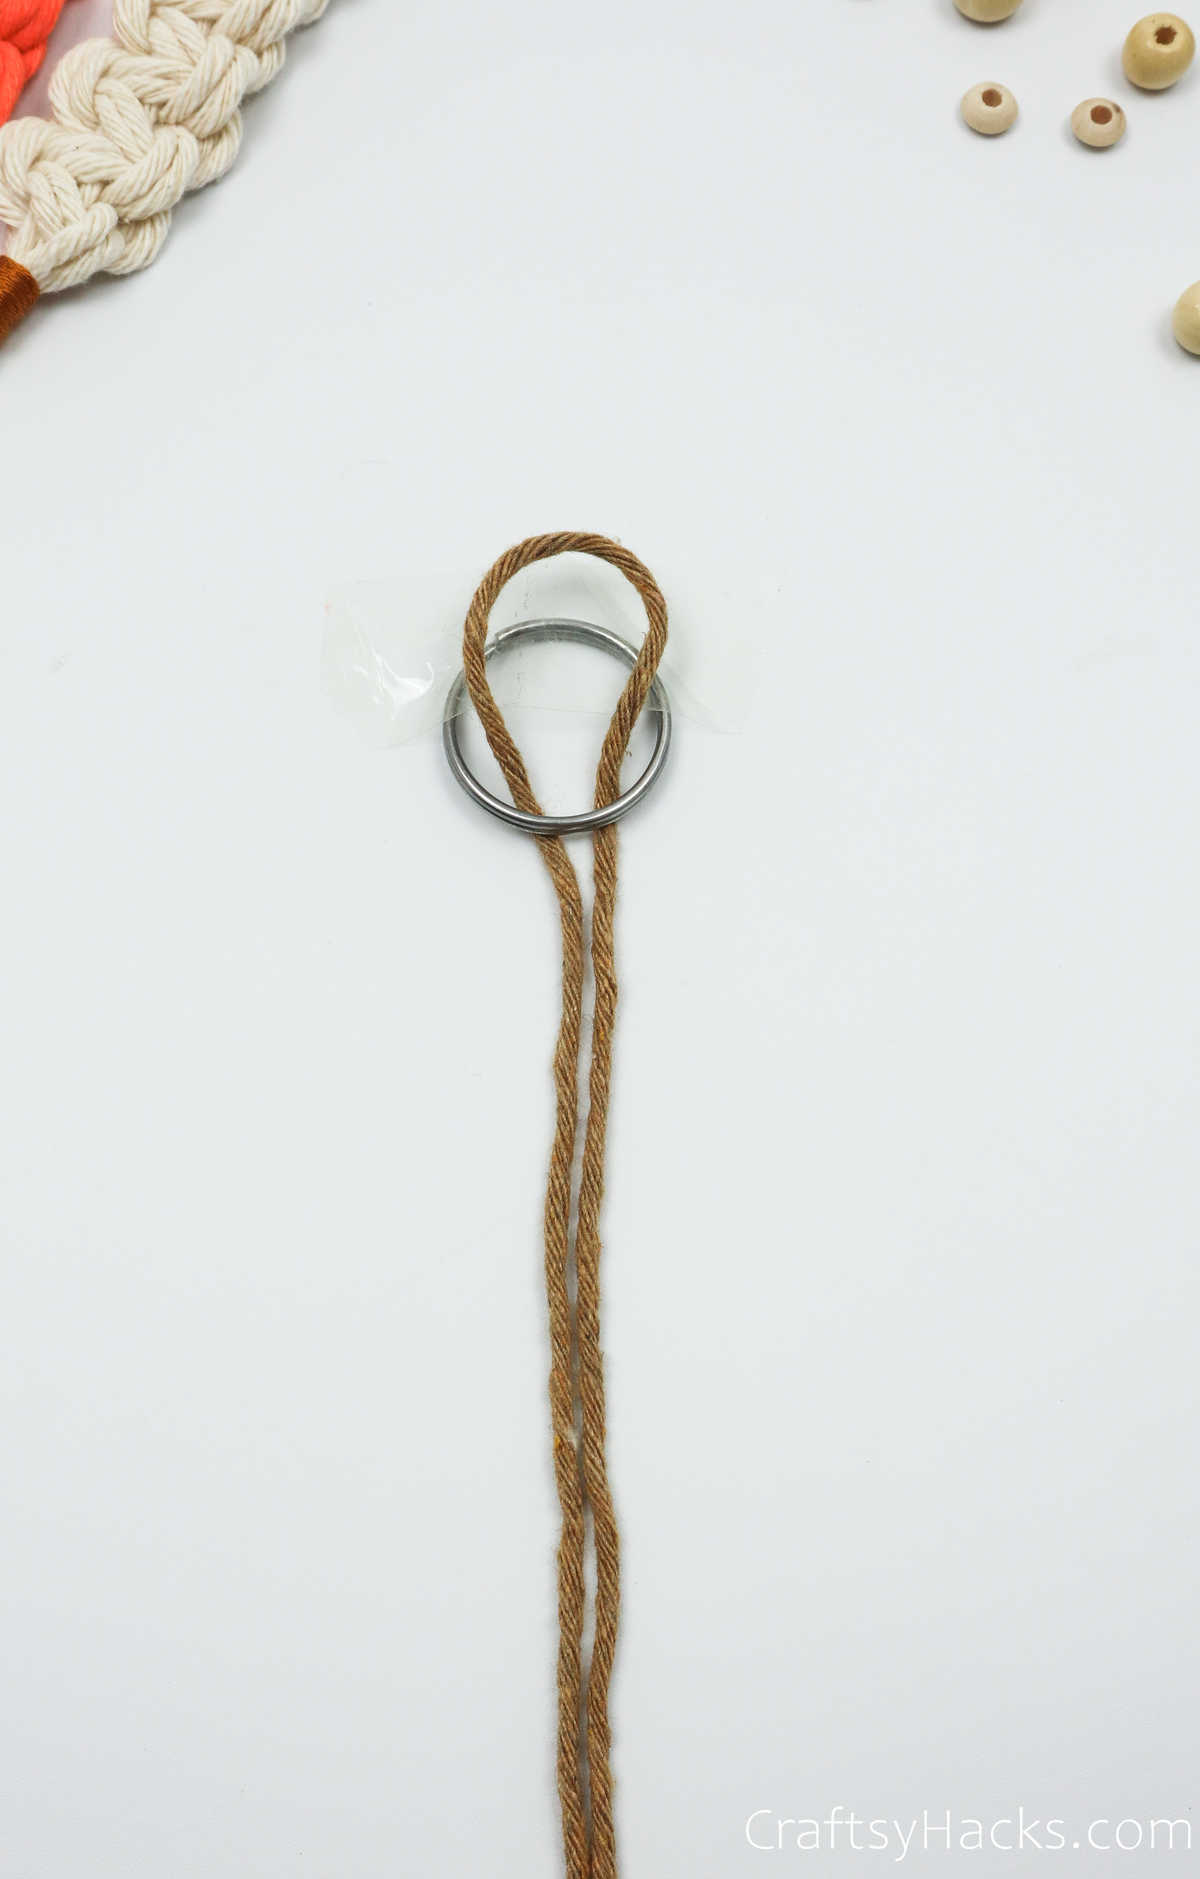 tying string to keyring